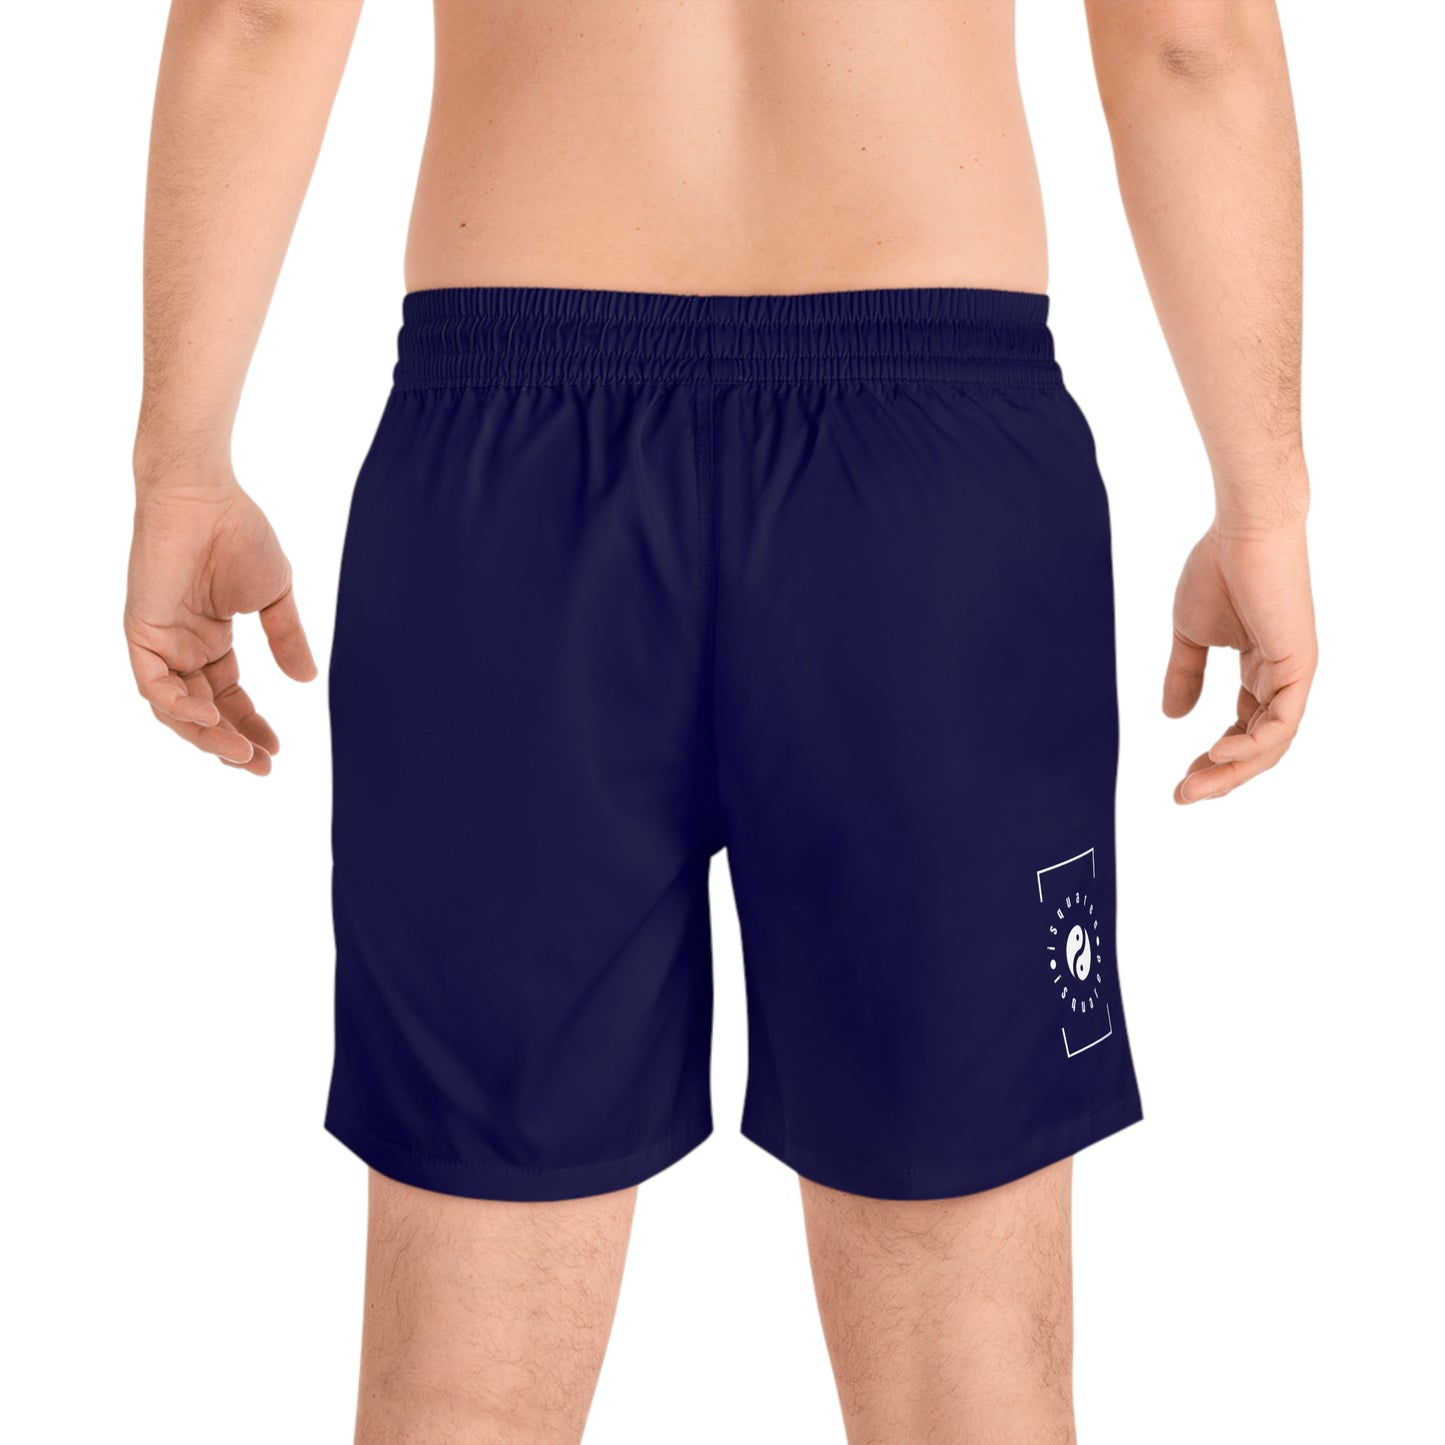 Royal Blue - Swim Shorts (Solid Color) for Men